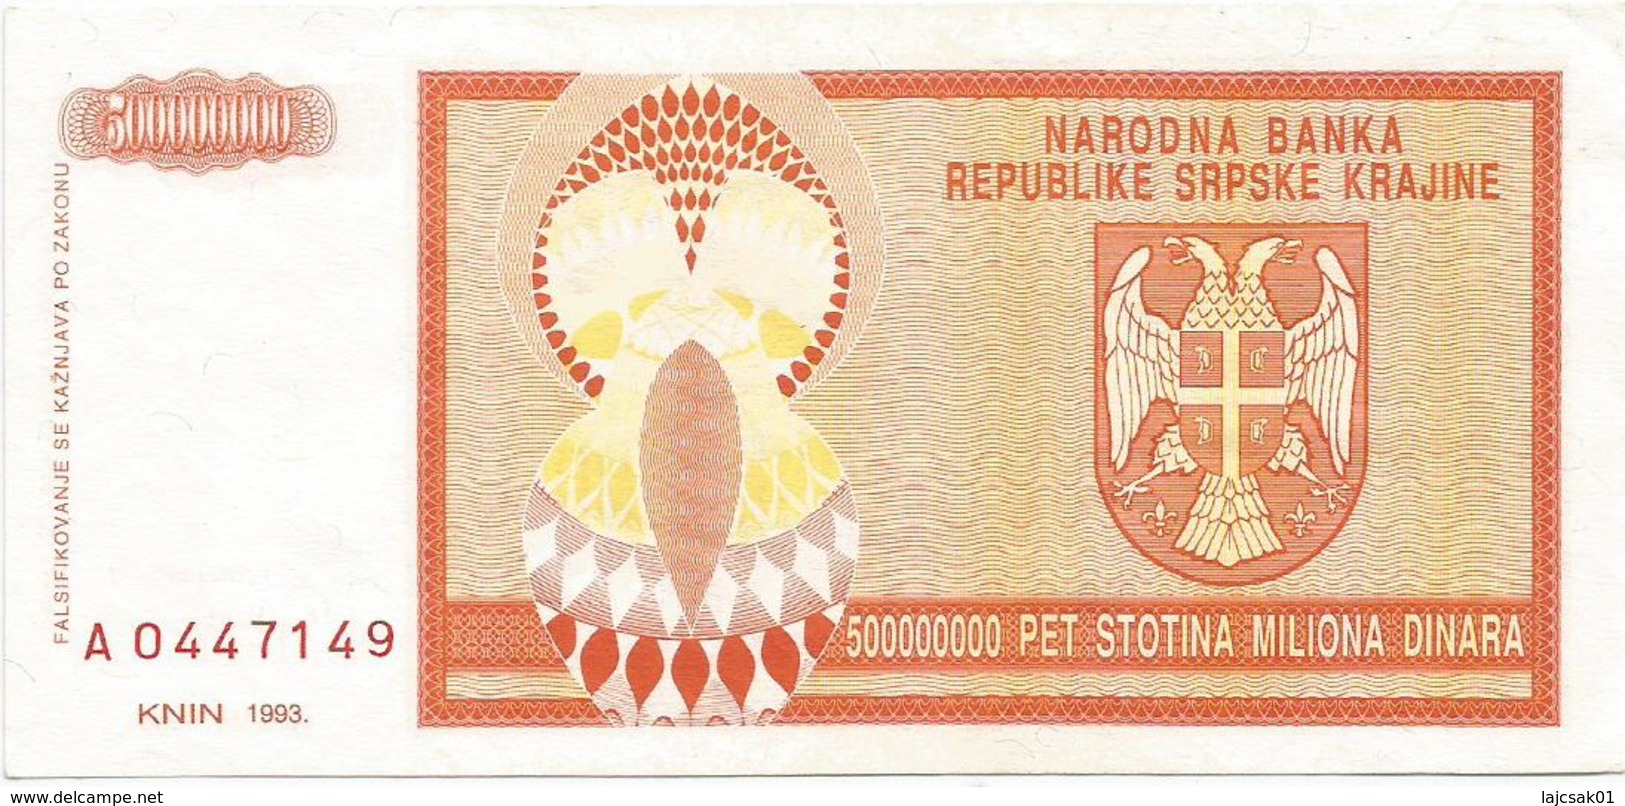 Croatia 500.000.000 Dinara 1993. P-R16 - Croatia